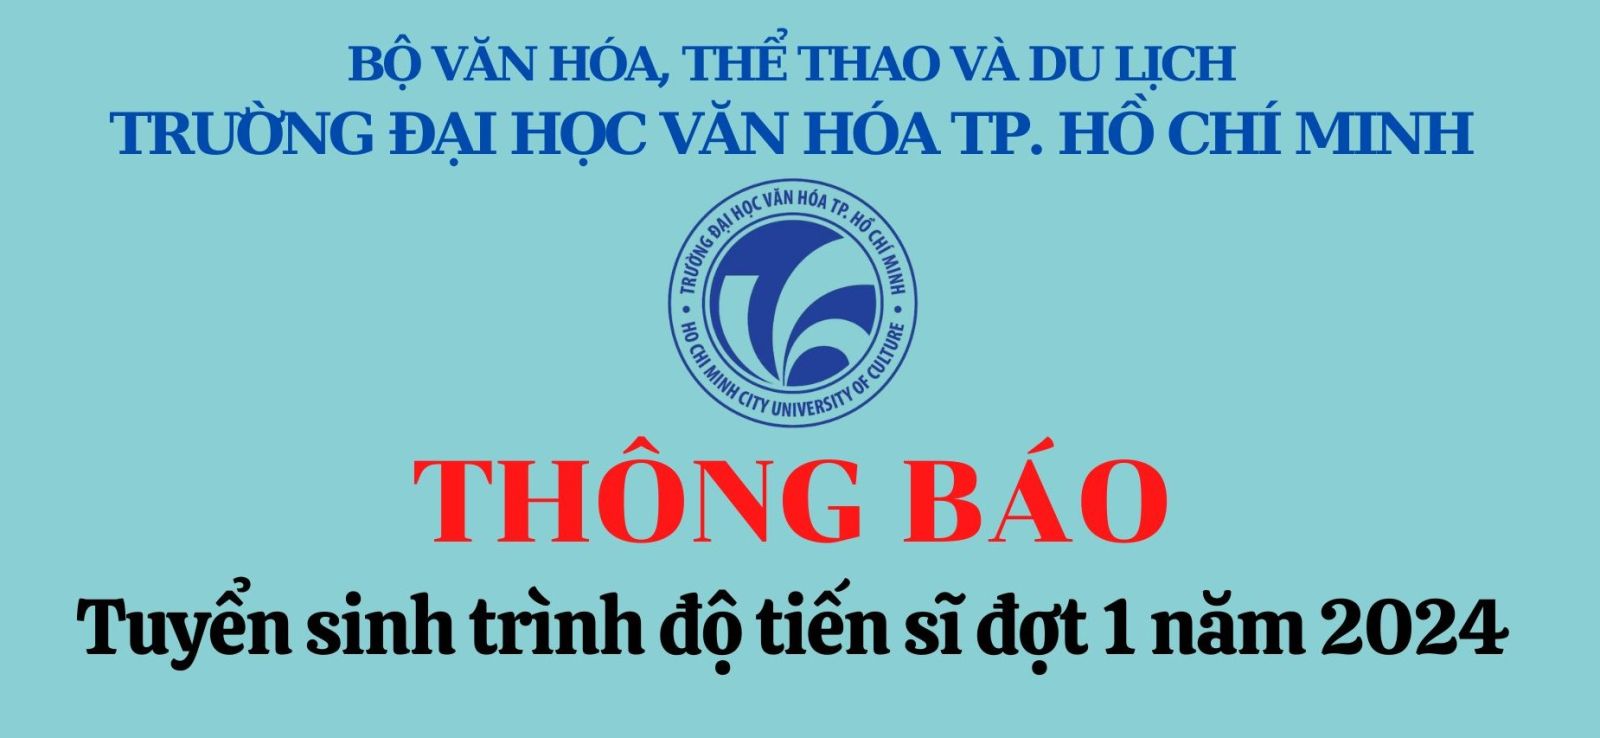 Trường Đại học Văn hóa Thành phố Hồ Chí Minh Thông báo bet365 mobile bet
 trình độ tiến sĩ năm 2024